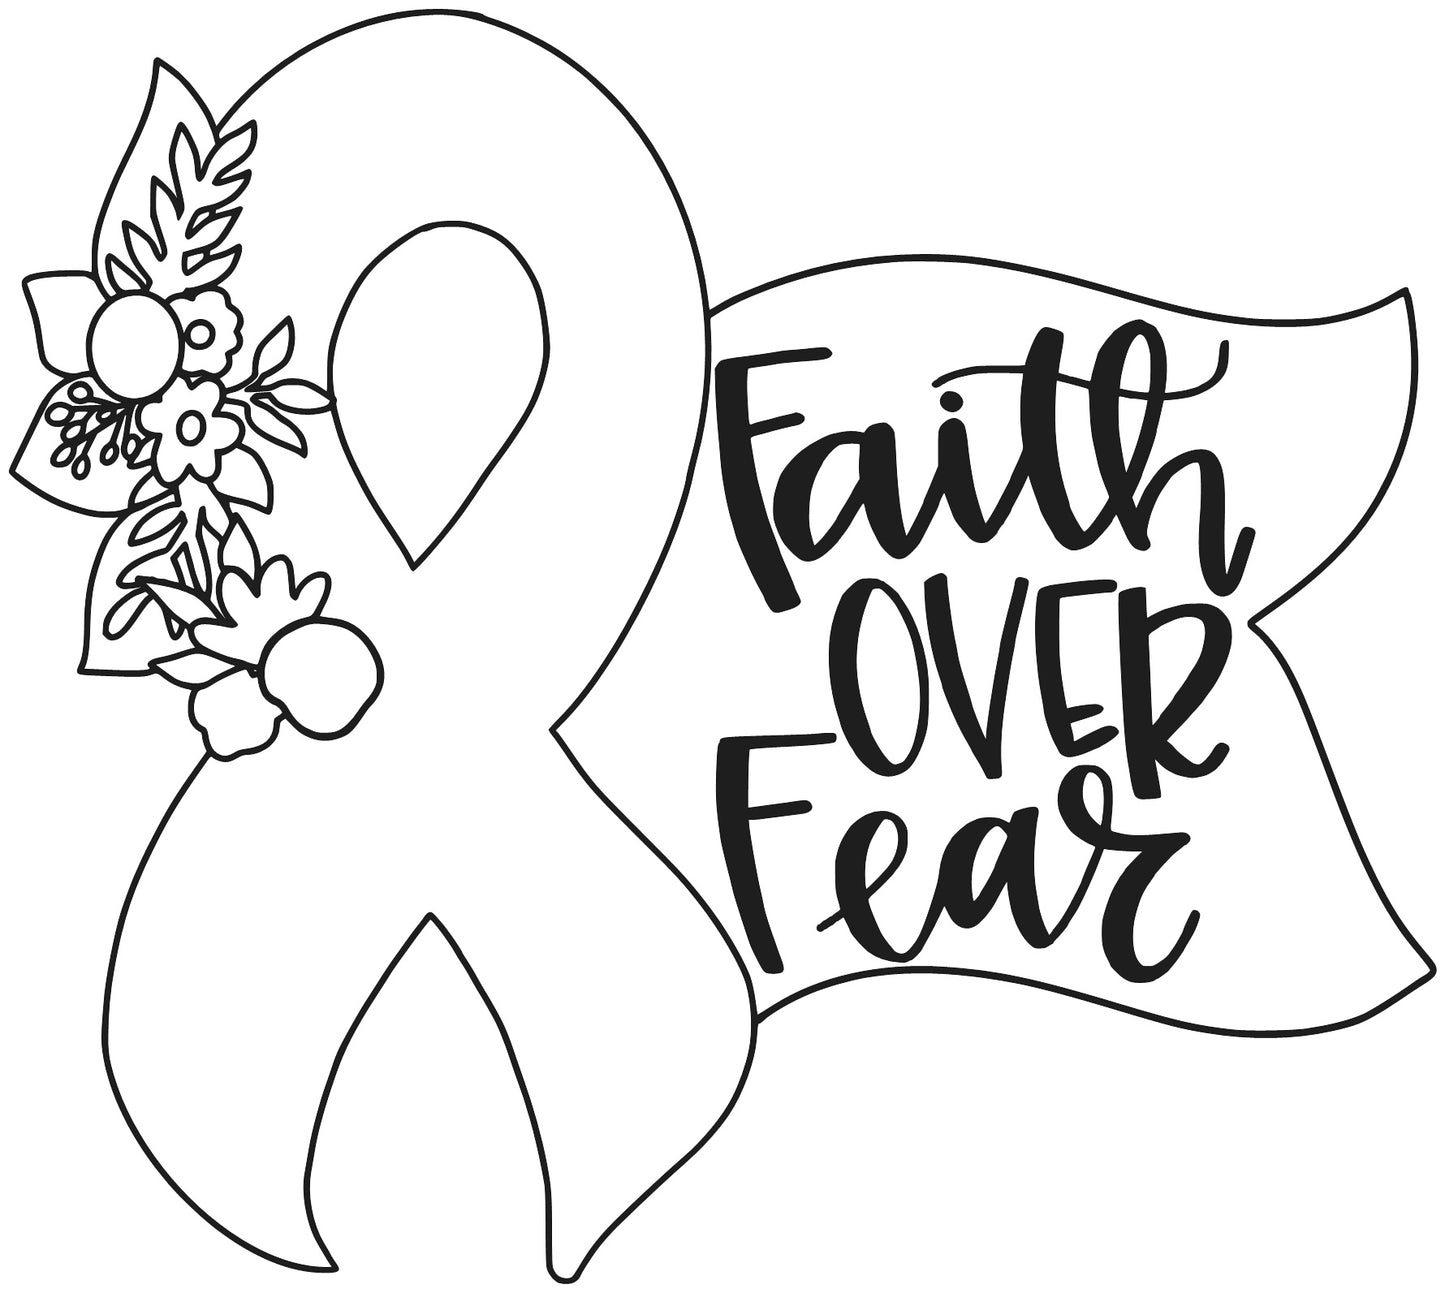 Paint by line- Faith over Fear